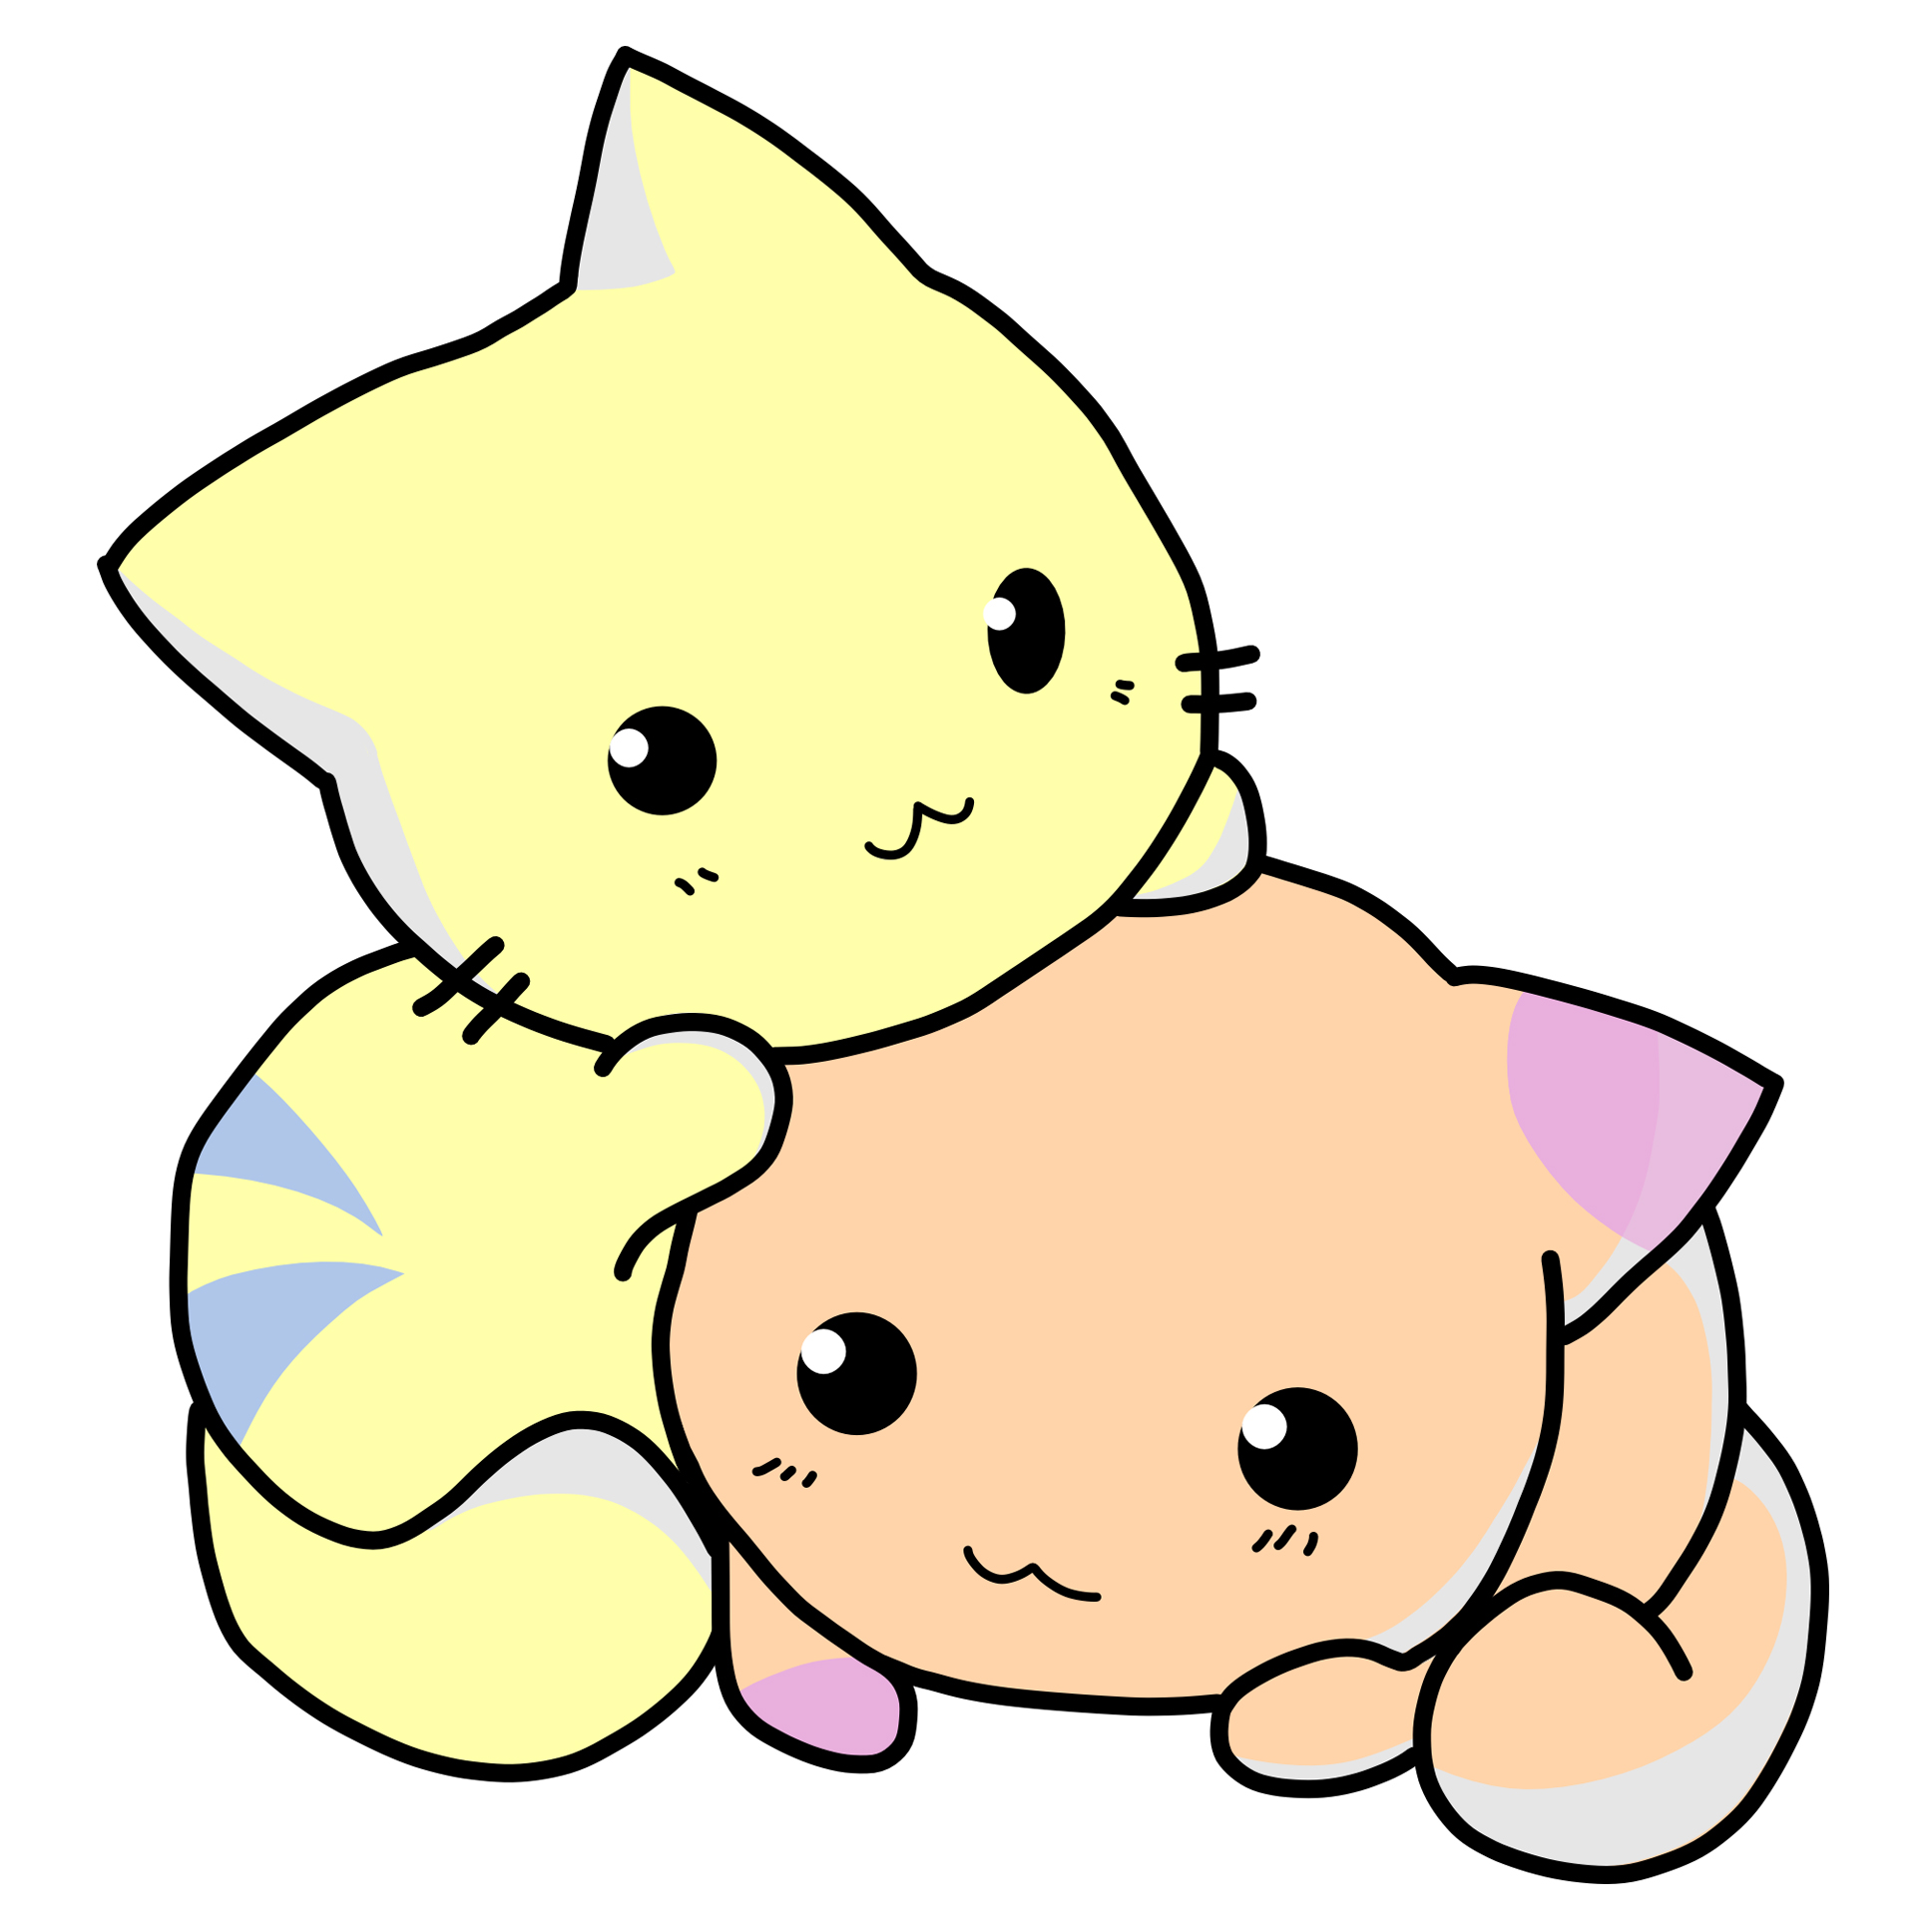 귀여운 아기 고양이그림 도안 및 웃는 고양이 캐릭터 모음